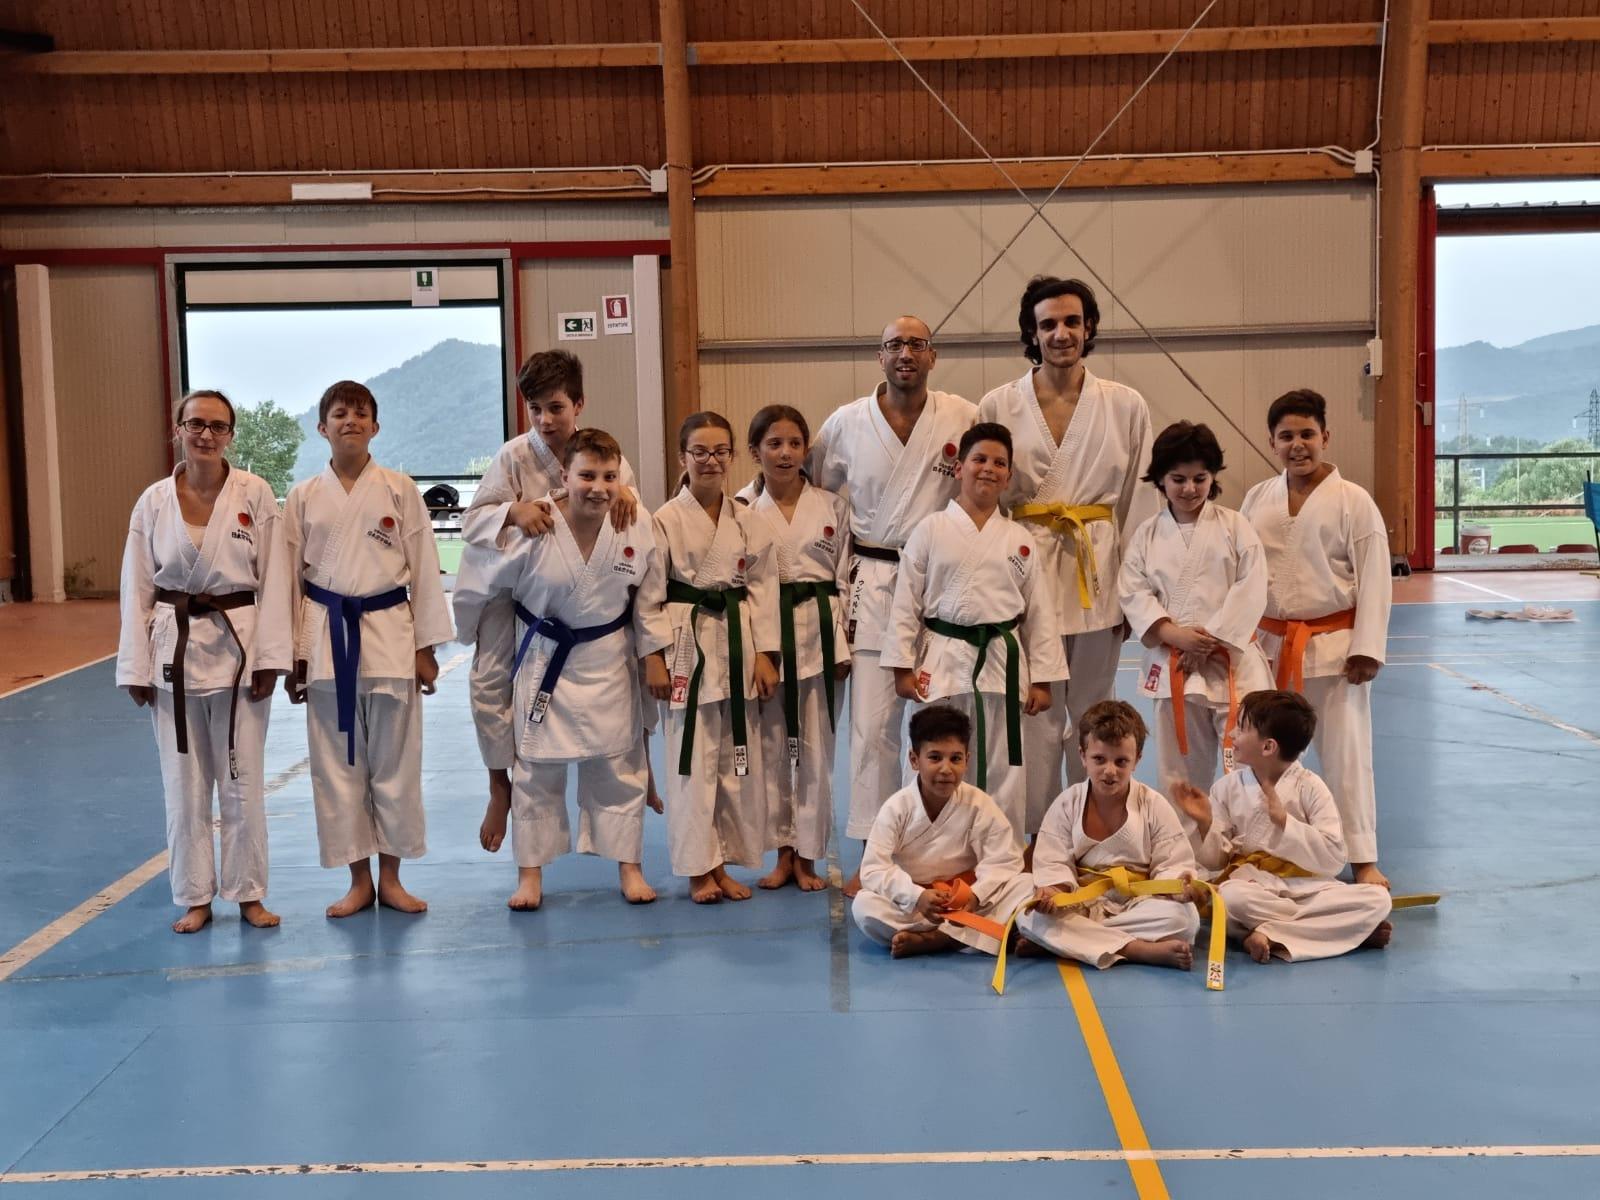 Scuola karate tradizionale, nuova sede a Policastro Bussentino